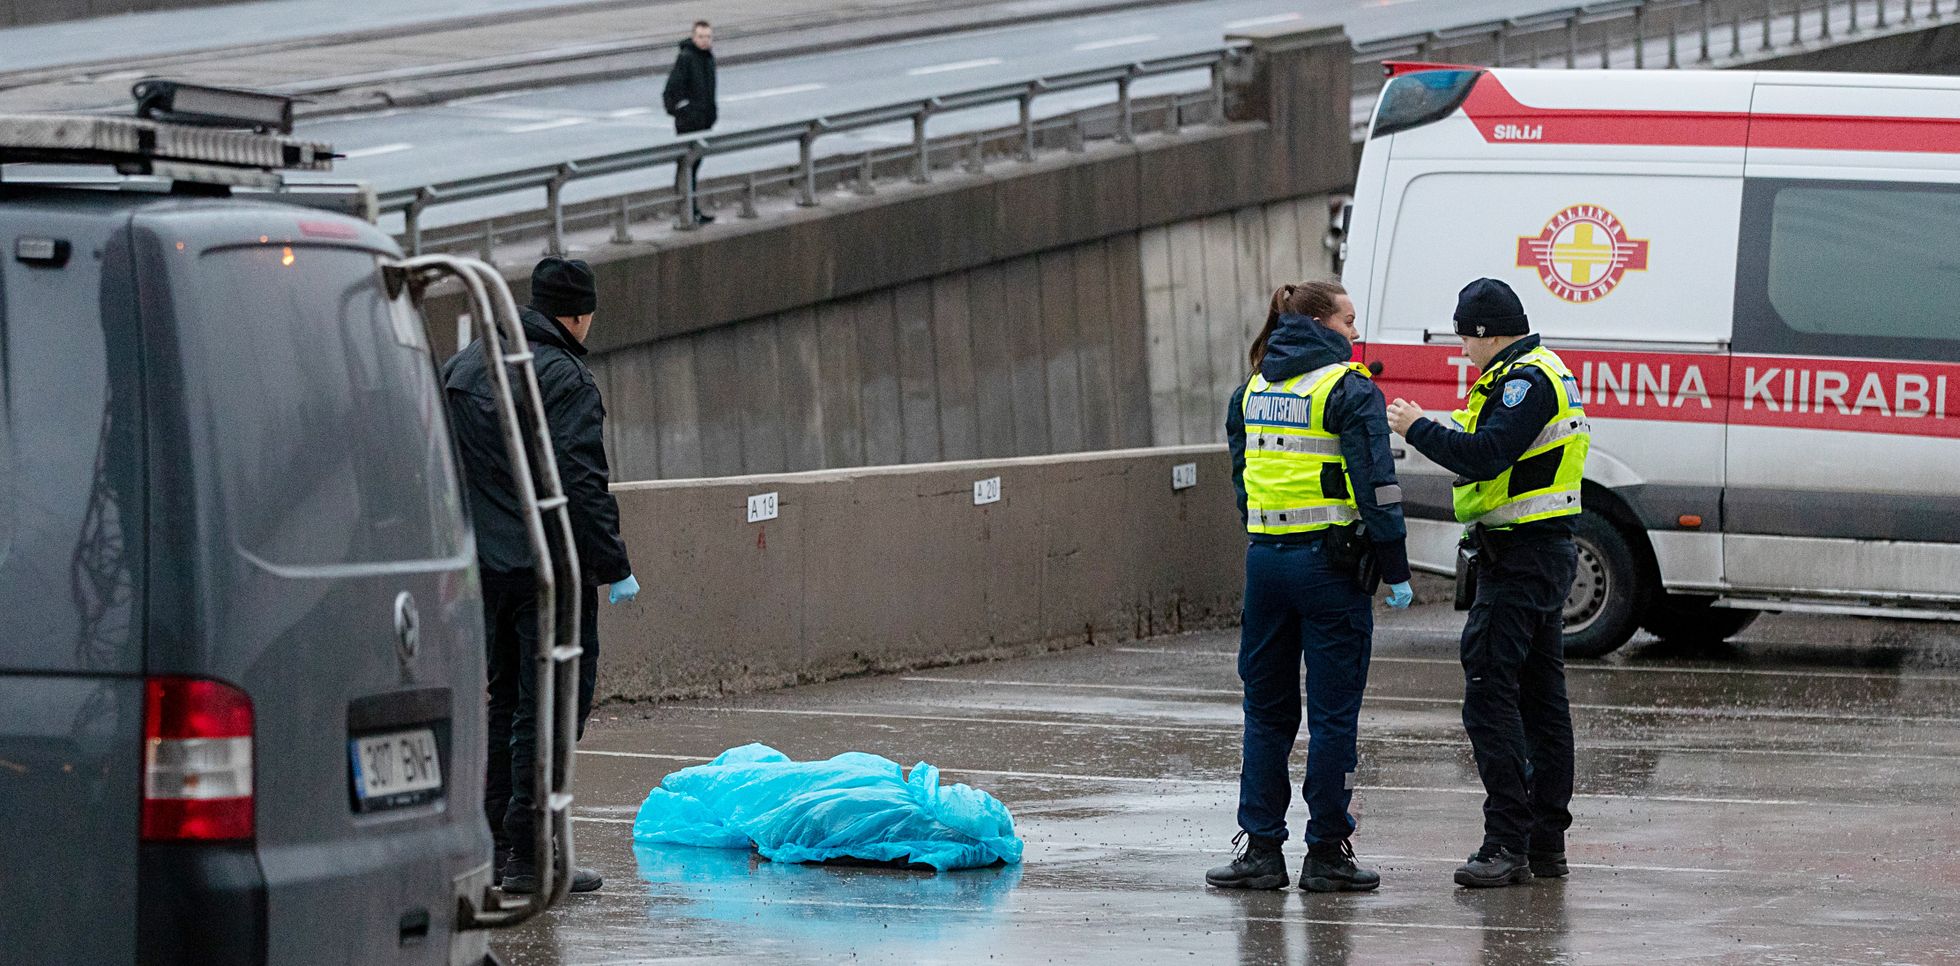 1. jaanuaril leiti Tallinnas Pärnu maanteel kõrguva ärihoone parklast 27-aastase mehe surnukeha. Põhja prefektuuri kriminaalbüroo juhi Urmet Tambre sõnul suri noormees õnnetuse tagajärjel.